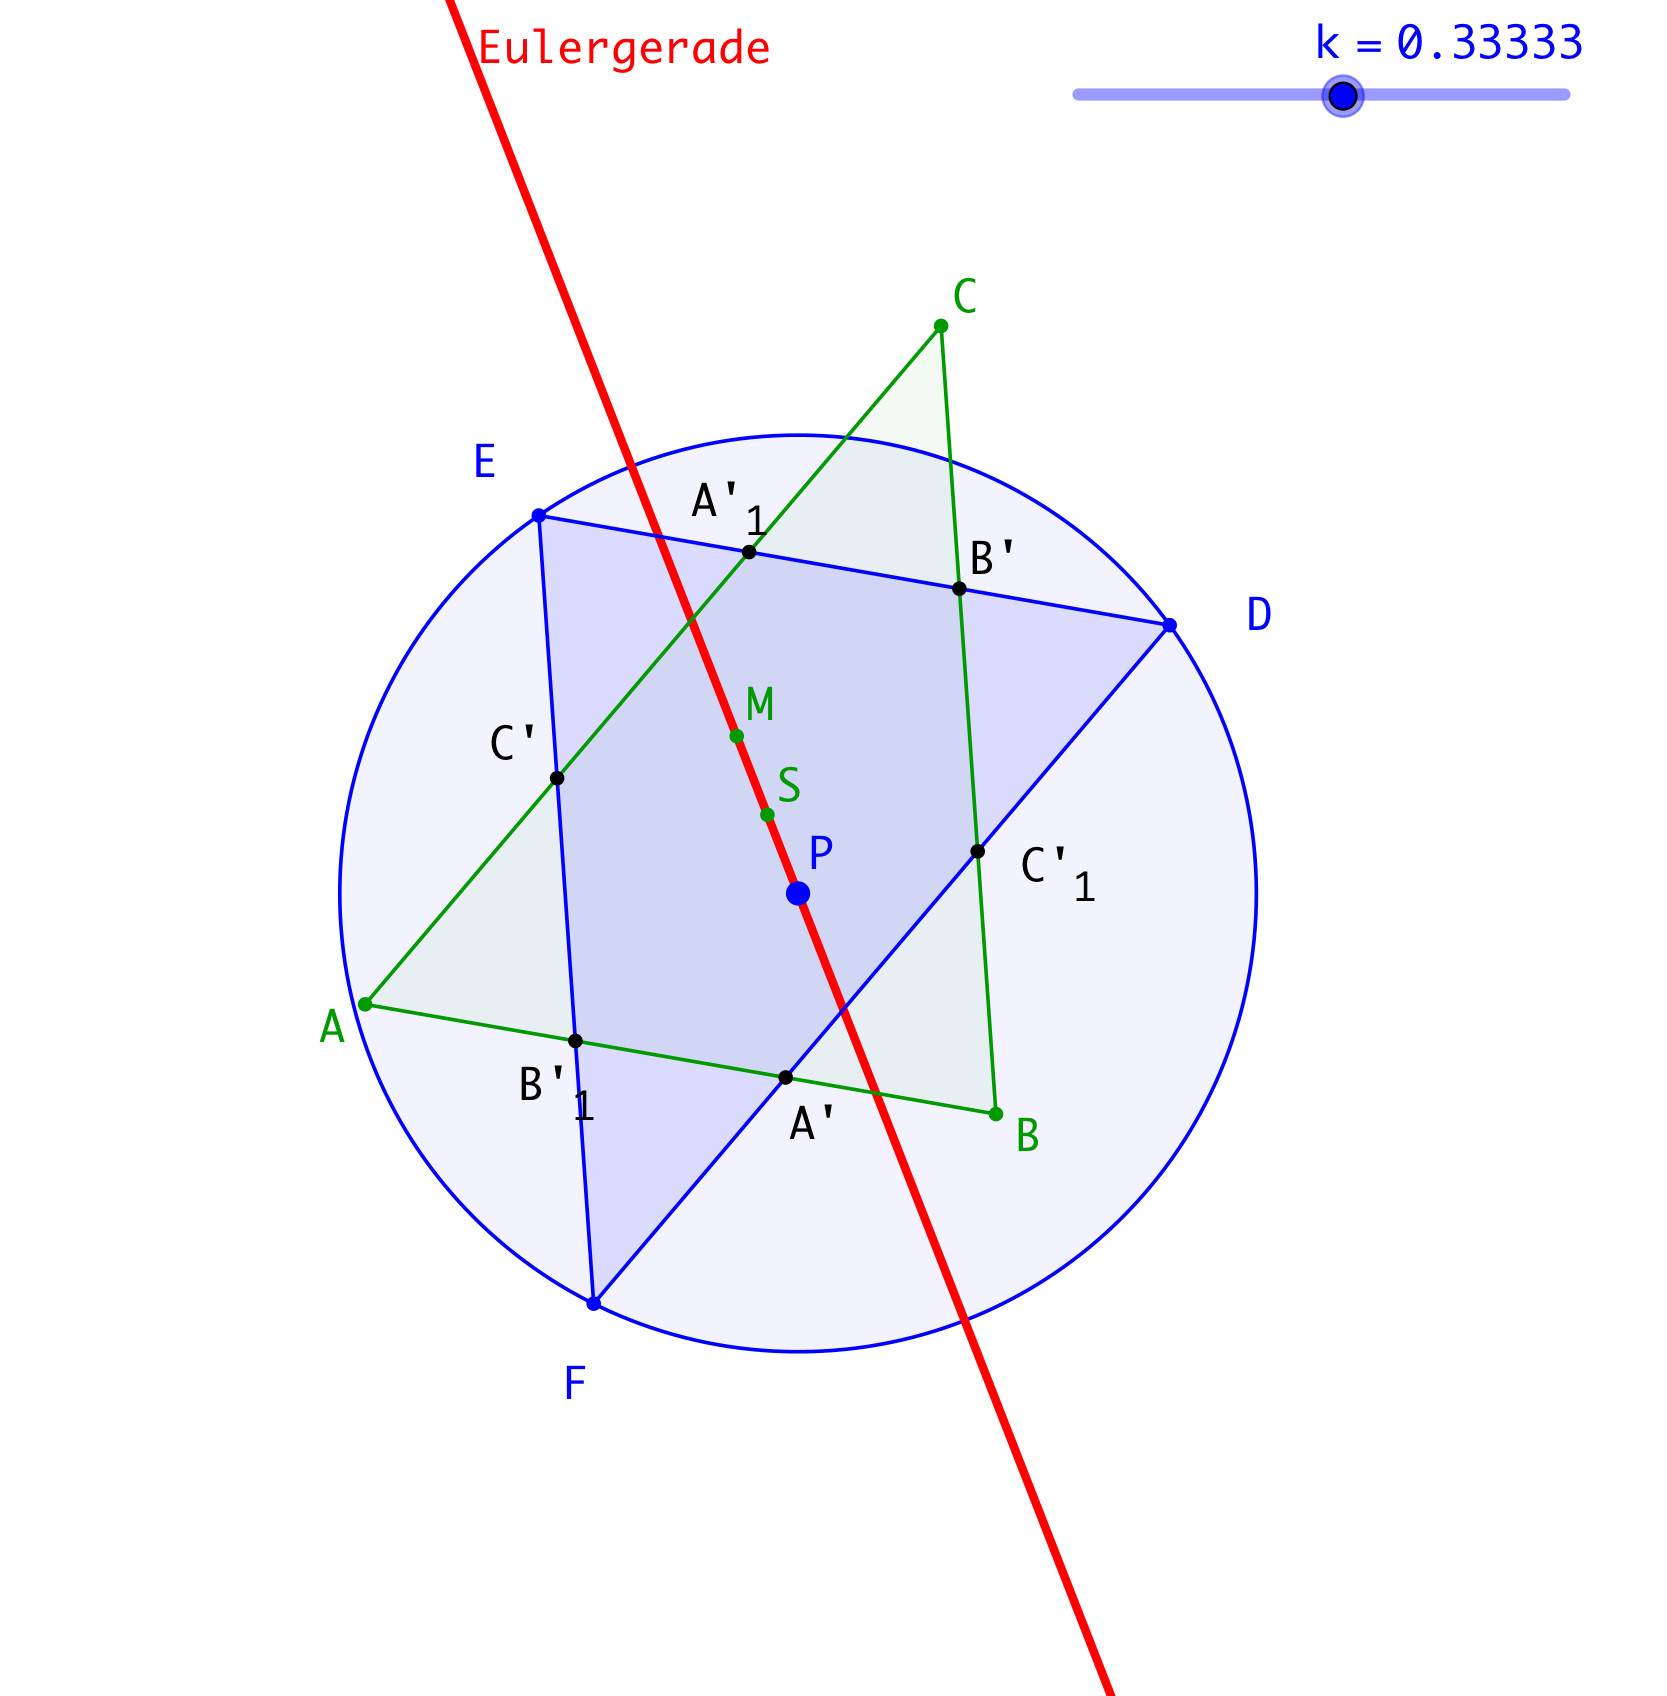 Ein Bild, das Diagramm, Reihe, Kreis enthält.

Automatisch generierte Beschreibung